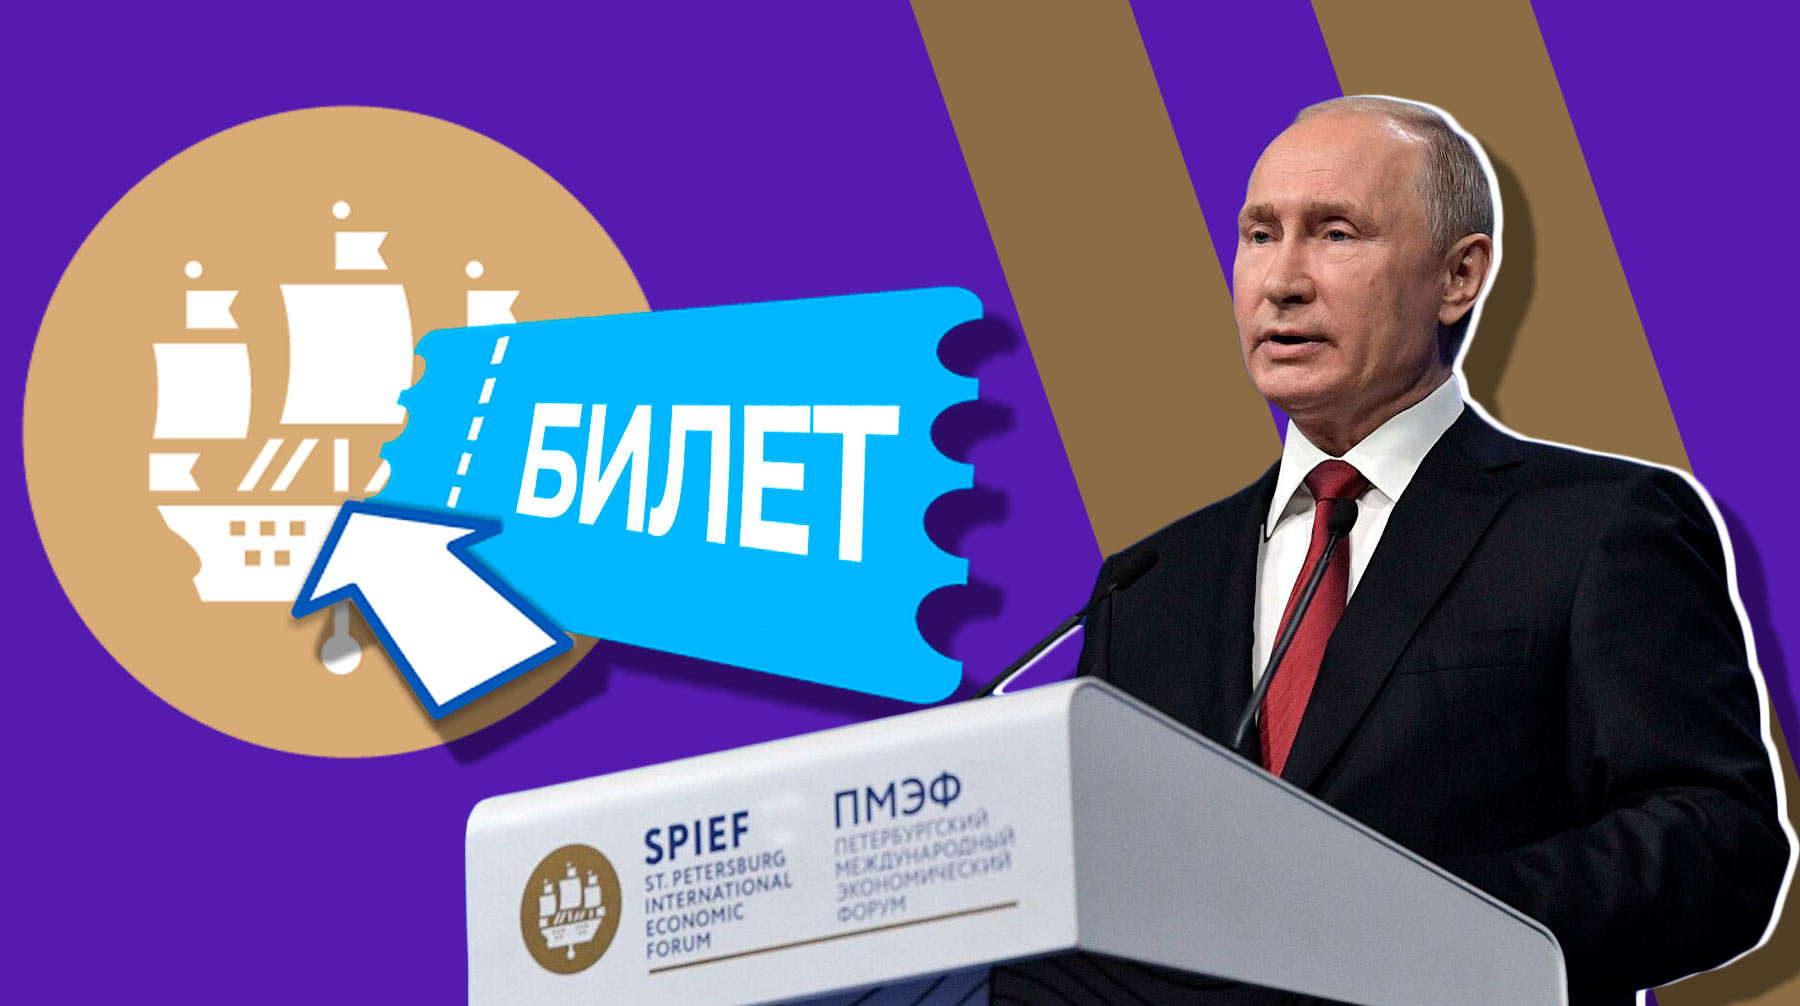 Посетить пленарное заседание с участием президента России могут только обладатели специальных приглашений, рассказали на форуме Коллаж: Daily Storm